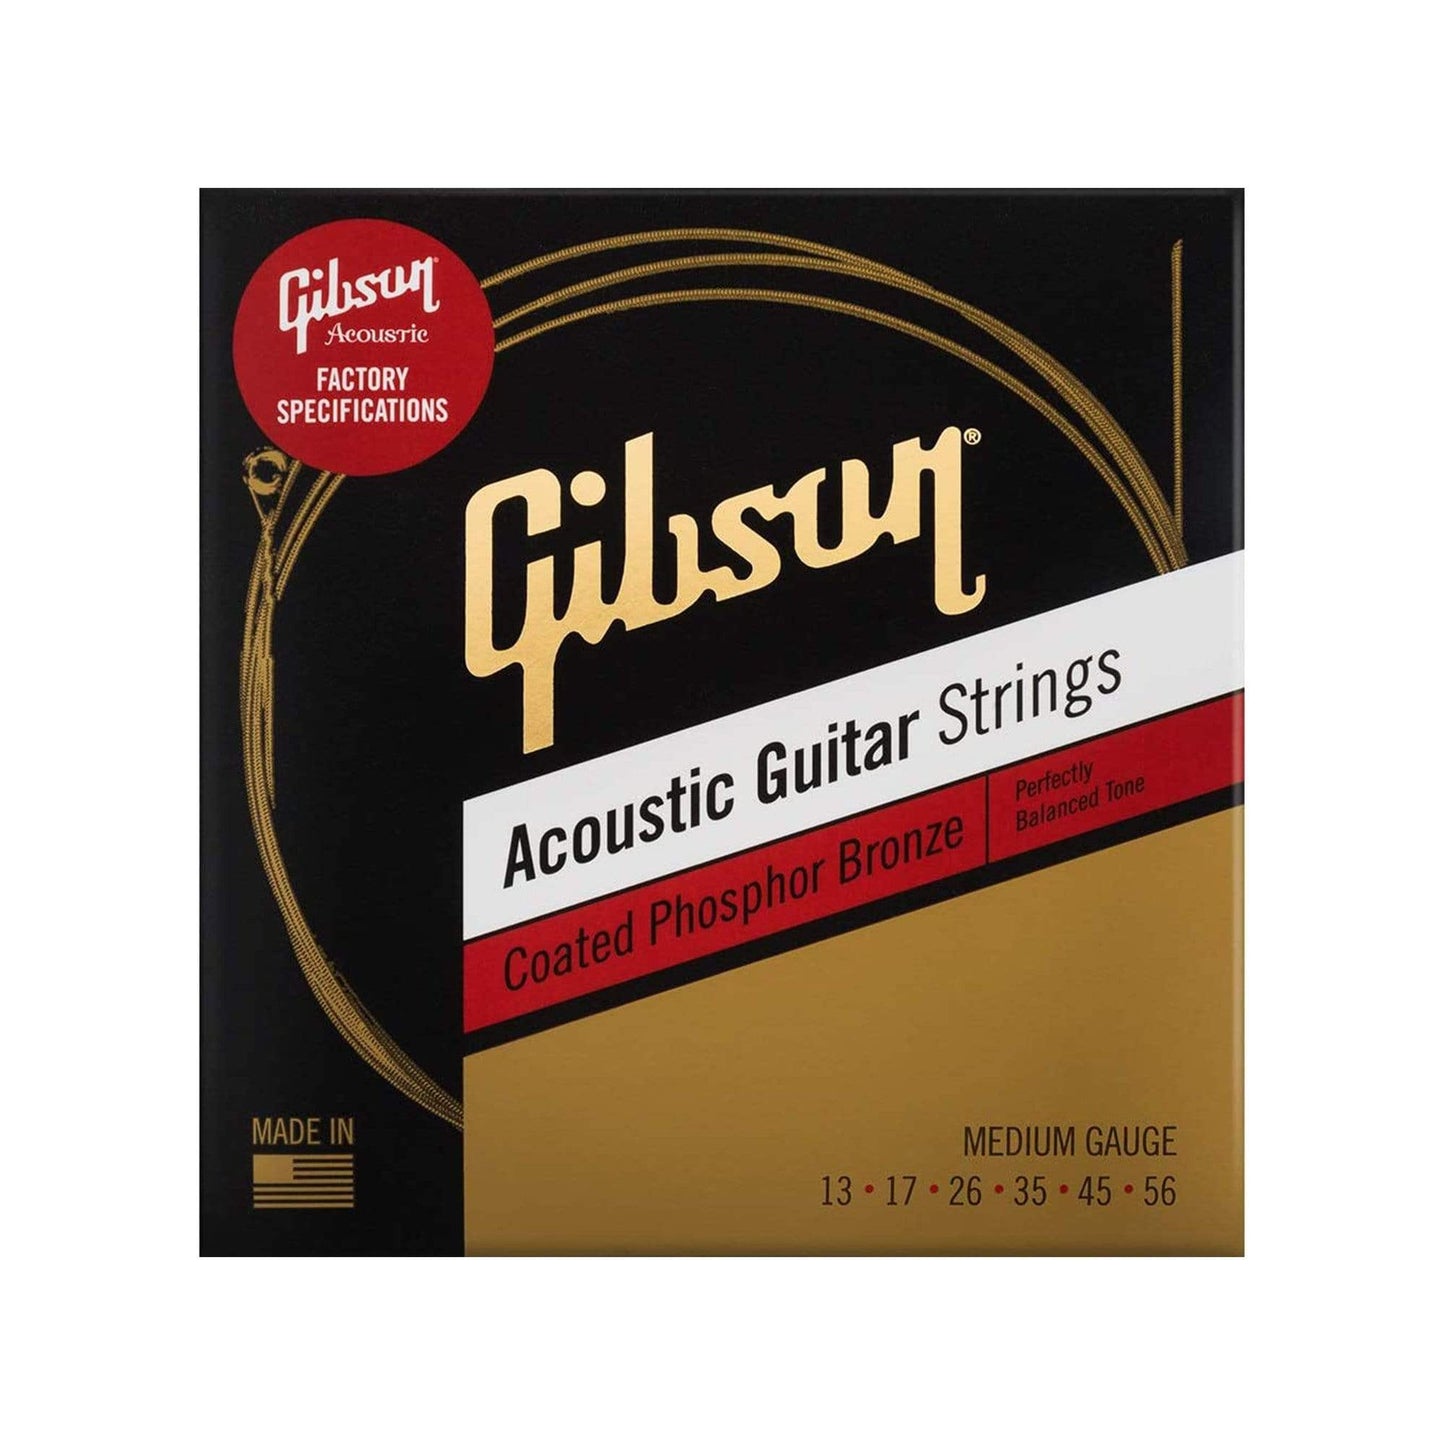 Gibson Coated Phosphor Bronze Acoustic Guitar Strings Medium Gauge 13-56 Accessories / Strings / Guitar Strings